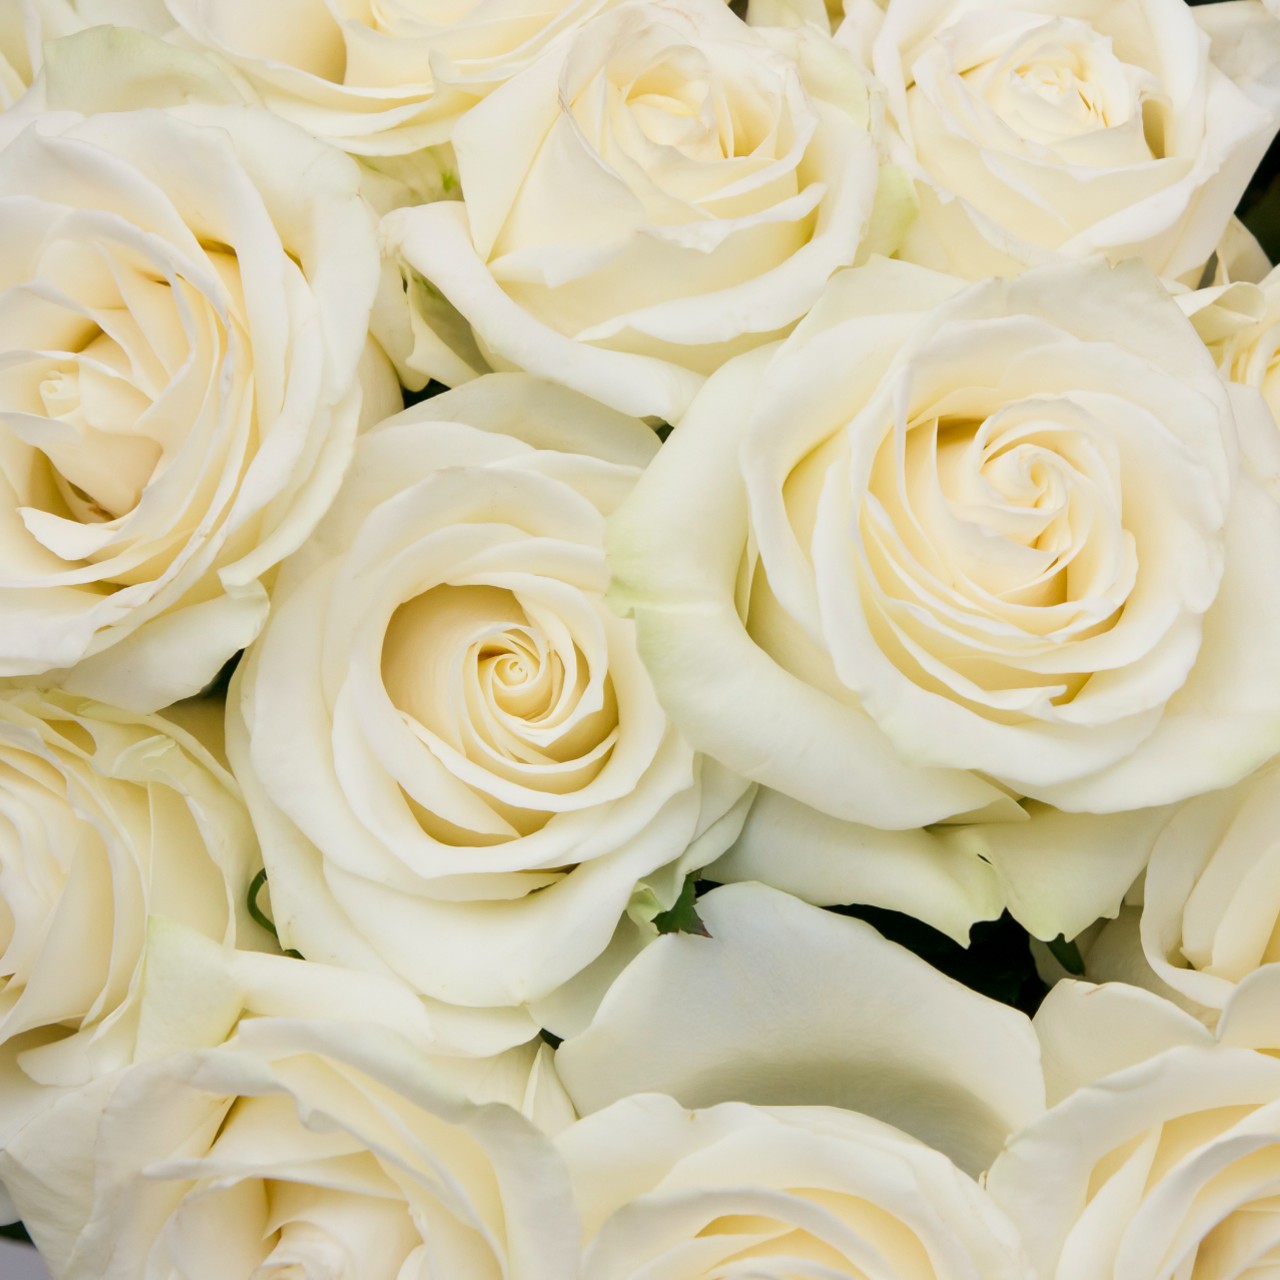 Delta Gamma - Cream Roses, 40cm – Flowers For Fundraising